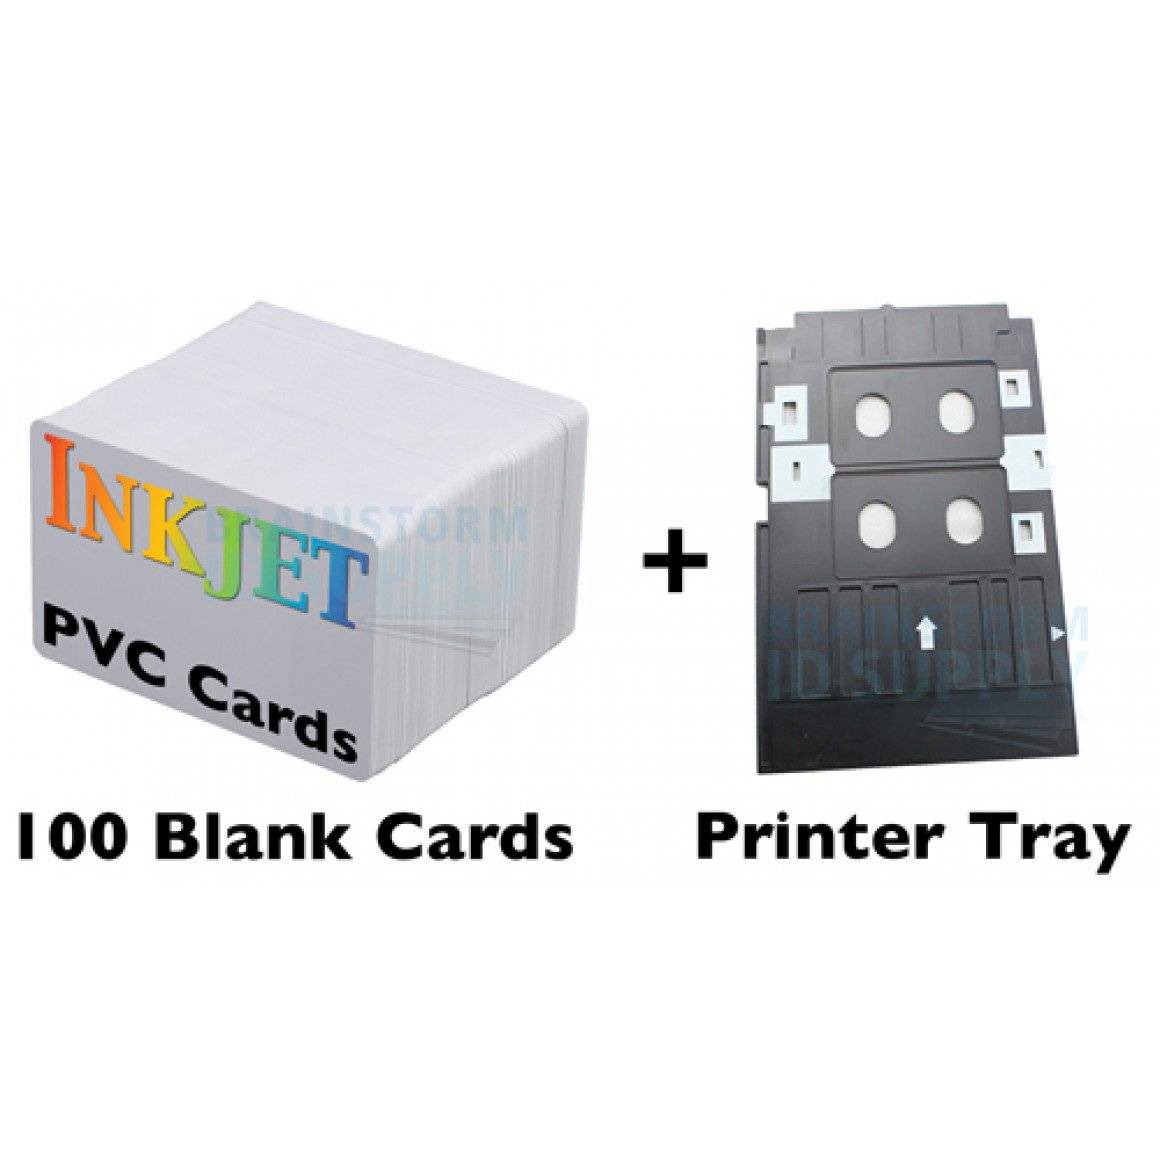 100 Card Inkjet PVC ID Kit